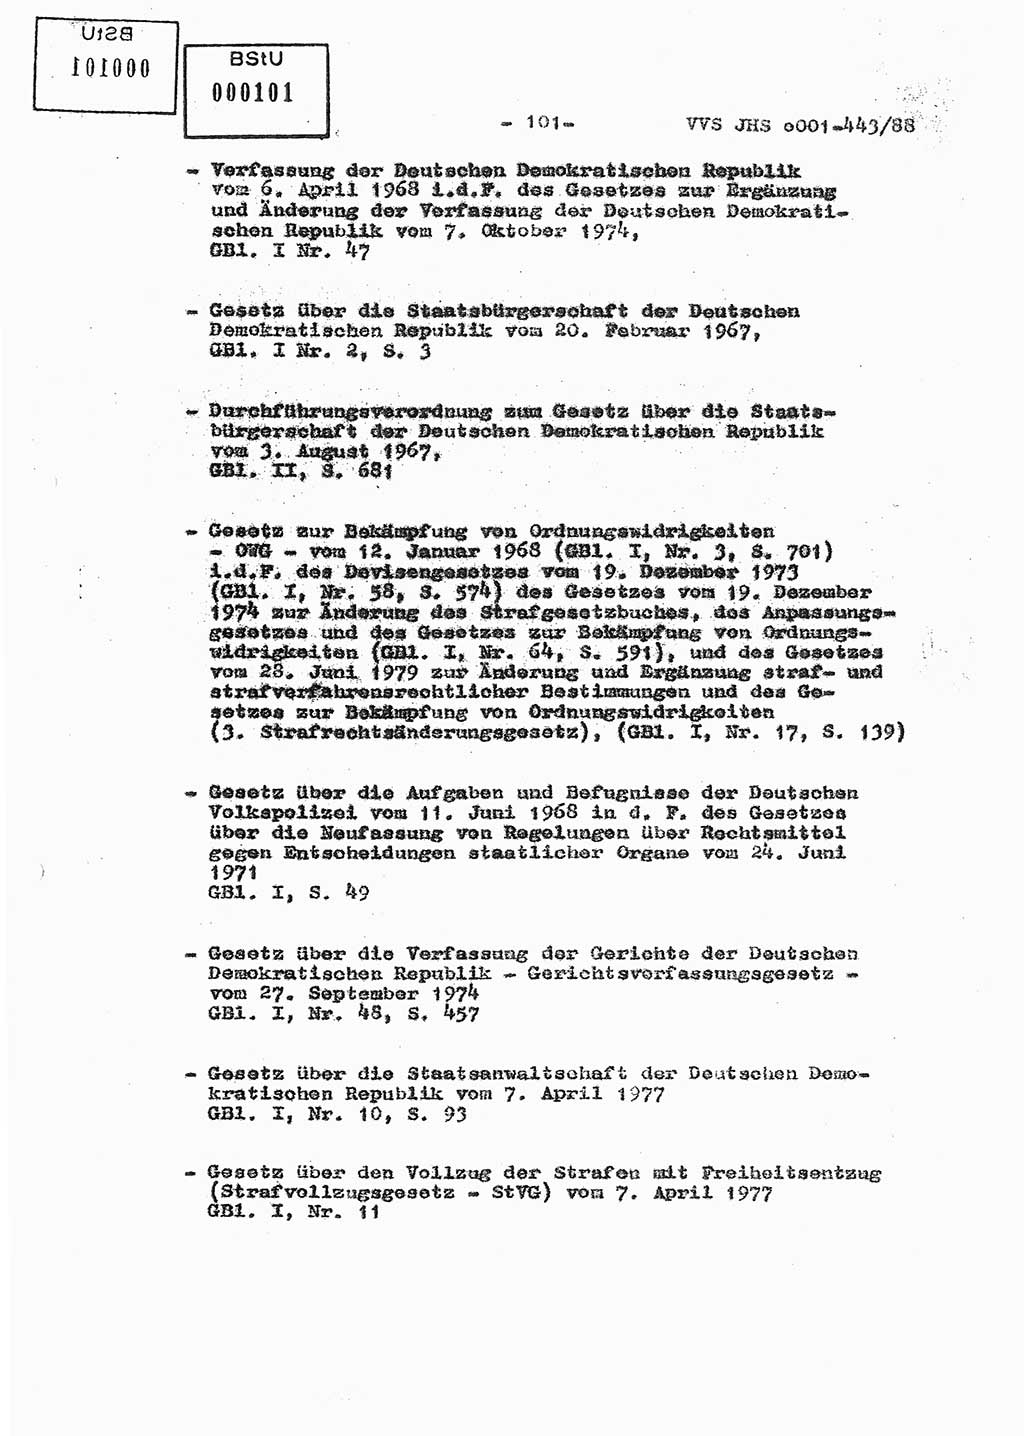 Diplomarbeit Hauptmann Michael Rast (Abt. ⅩⅣ), Major Bernd Rahaus (Abt. ⅩⅣ), Ministerium für Staatssicherheit (MfS) [Deutsche Demokratische Republik (DDR)], Juristische Hochschule (JHS), Vertrauliche Verschlußsache (VVS) o001-443/88, Potsdam 1988, Seite 101 (Dipl.-Arb. MfS DDR JHS VVS o001-443/88 1988, S. 101)